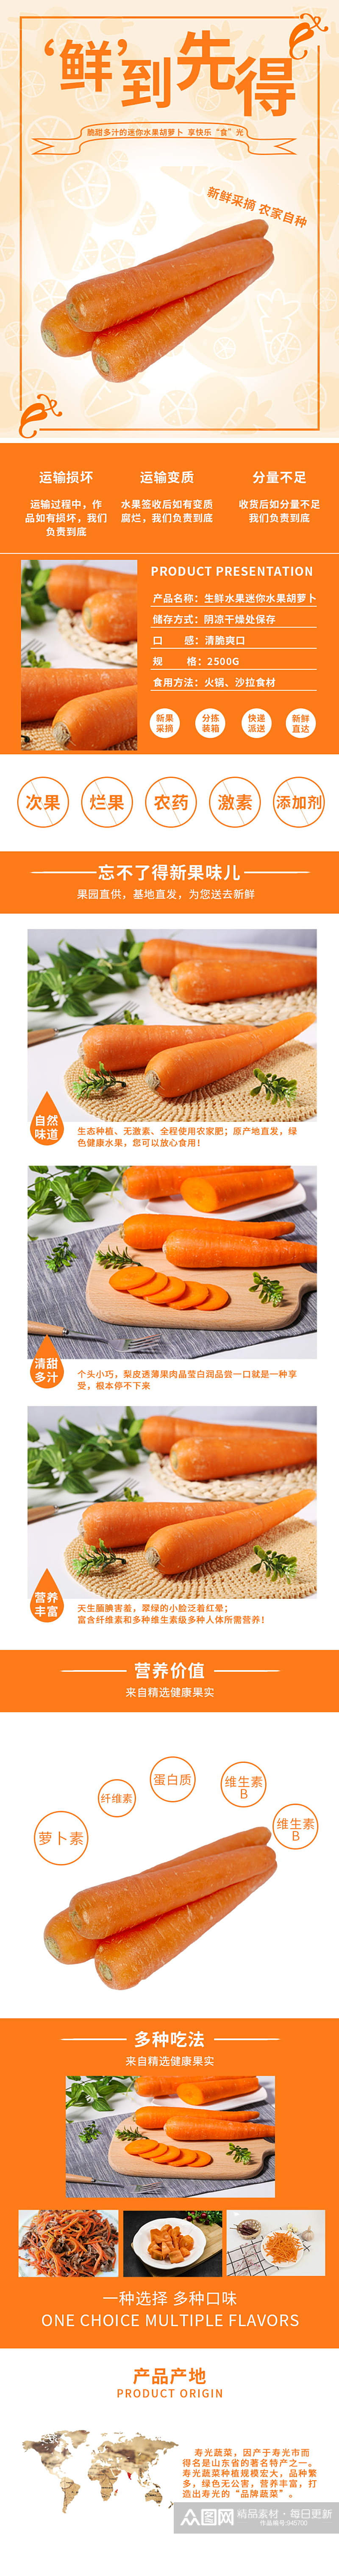 橙色生鲜水果迷你水果胡萝卜详情页素材